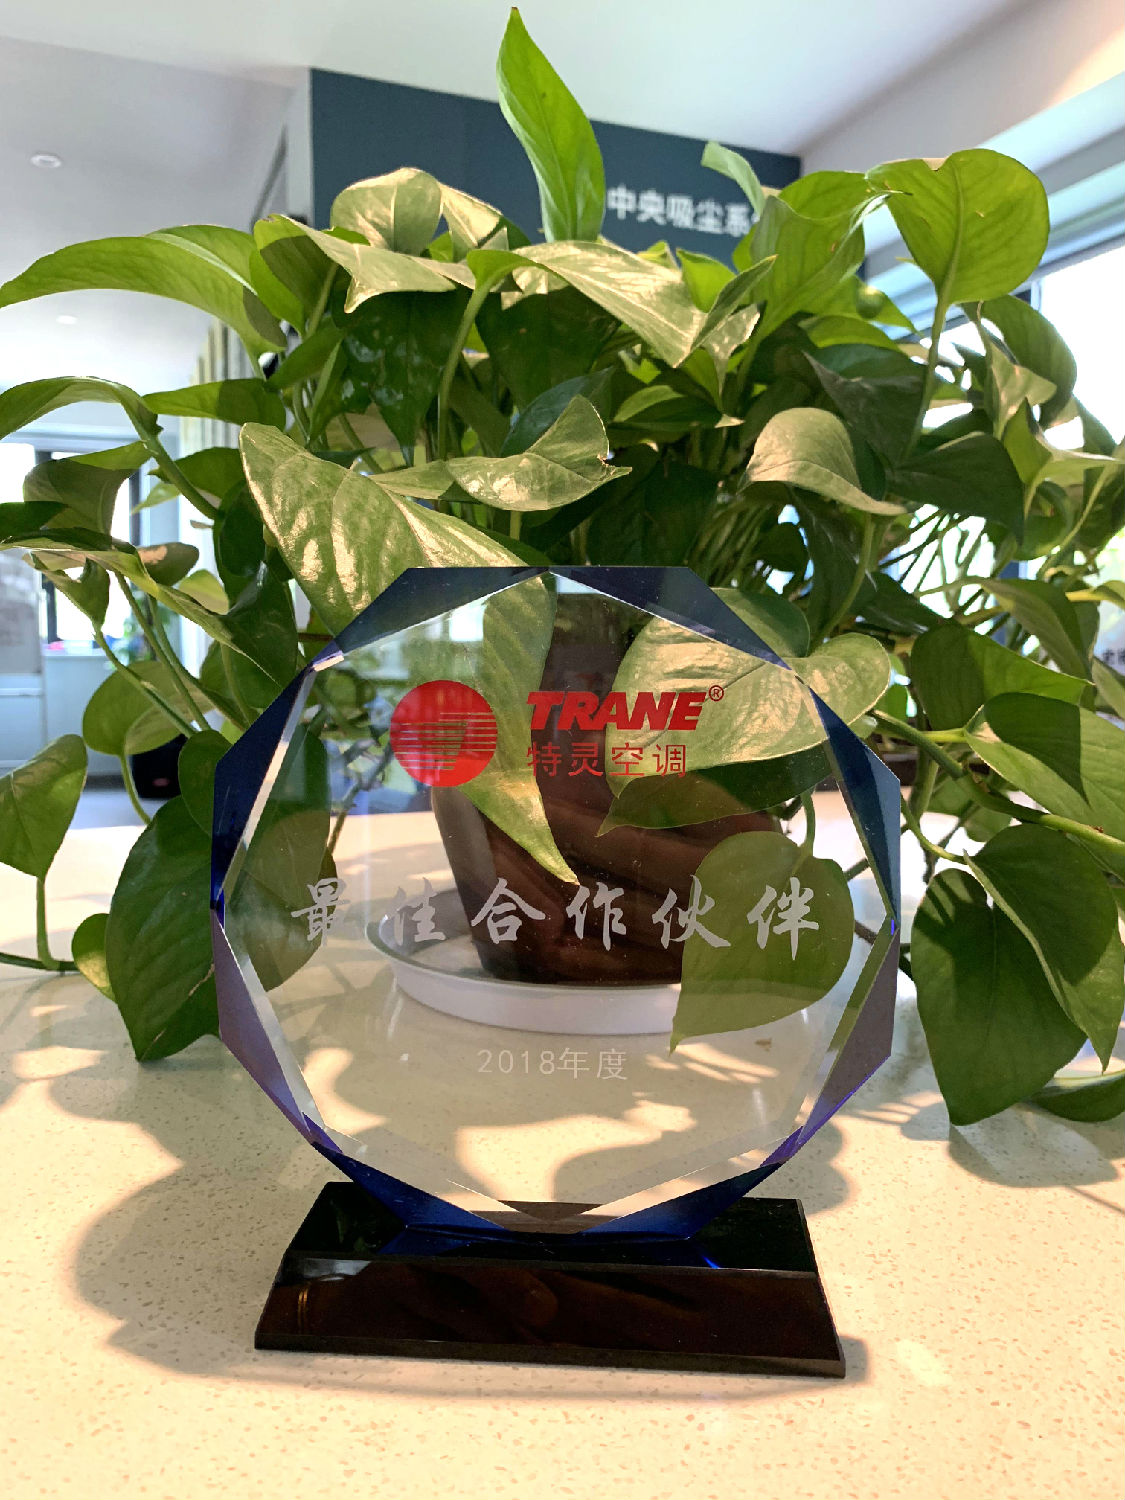 2018年度日新环境获得特灵空调“最佳合作伙伴奖”